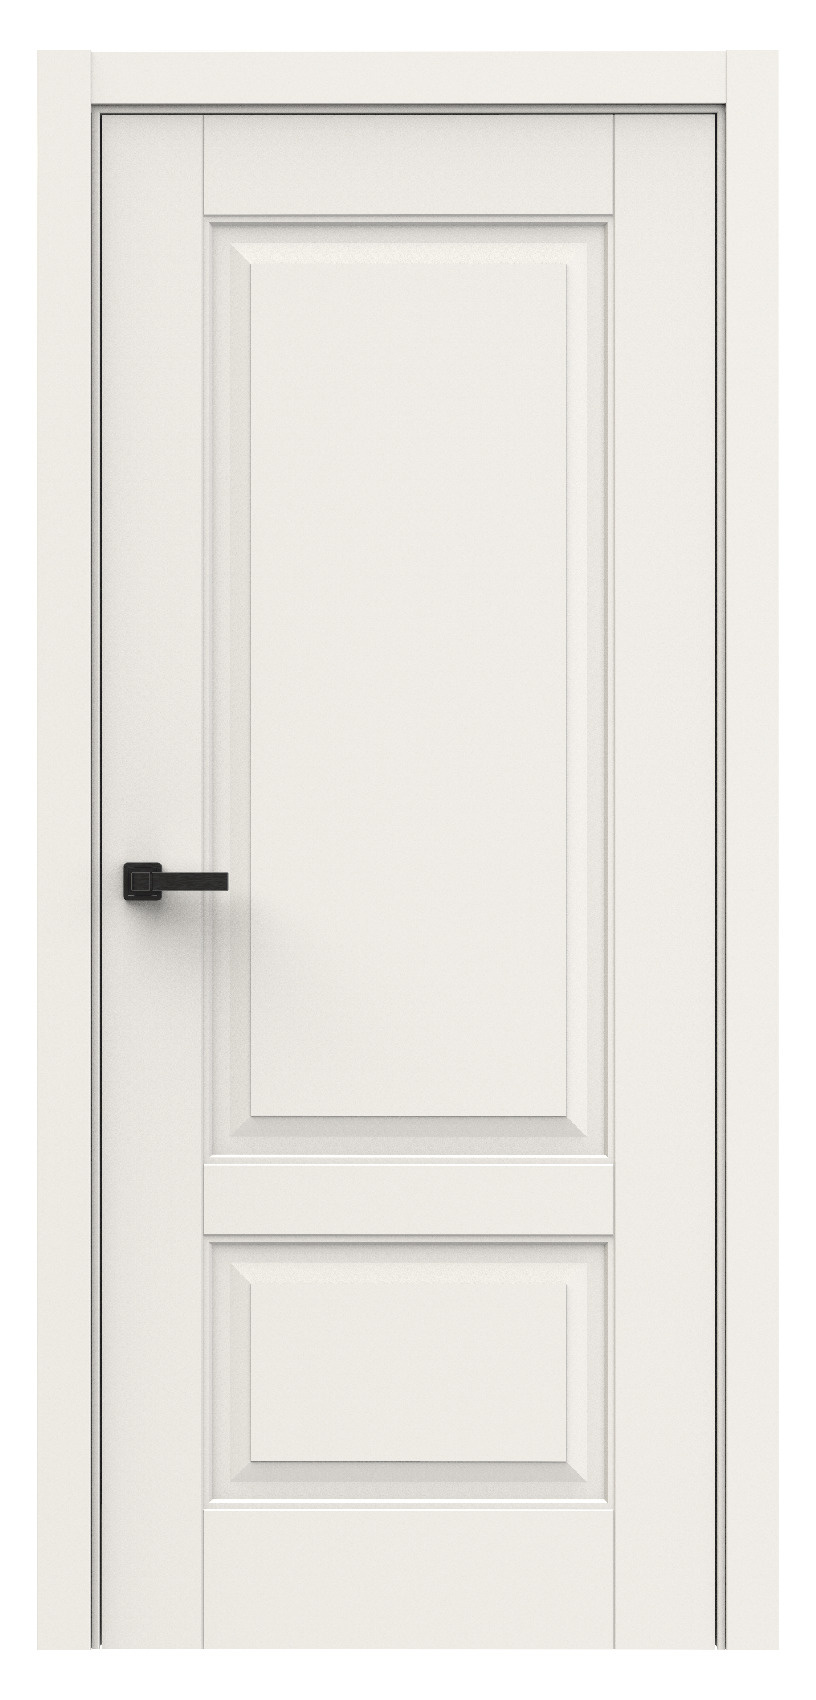 Questdoors Межкомнатная дверь QL1, арт. 18001 - фото №1